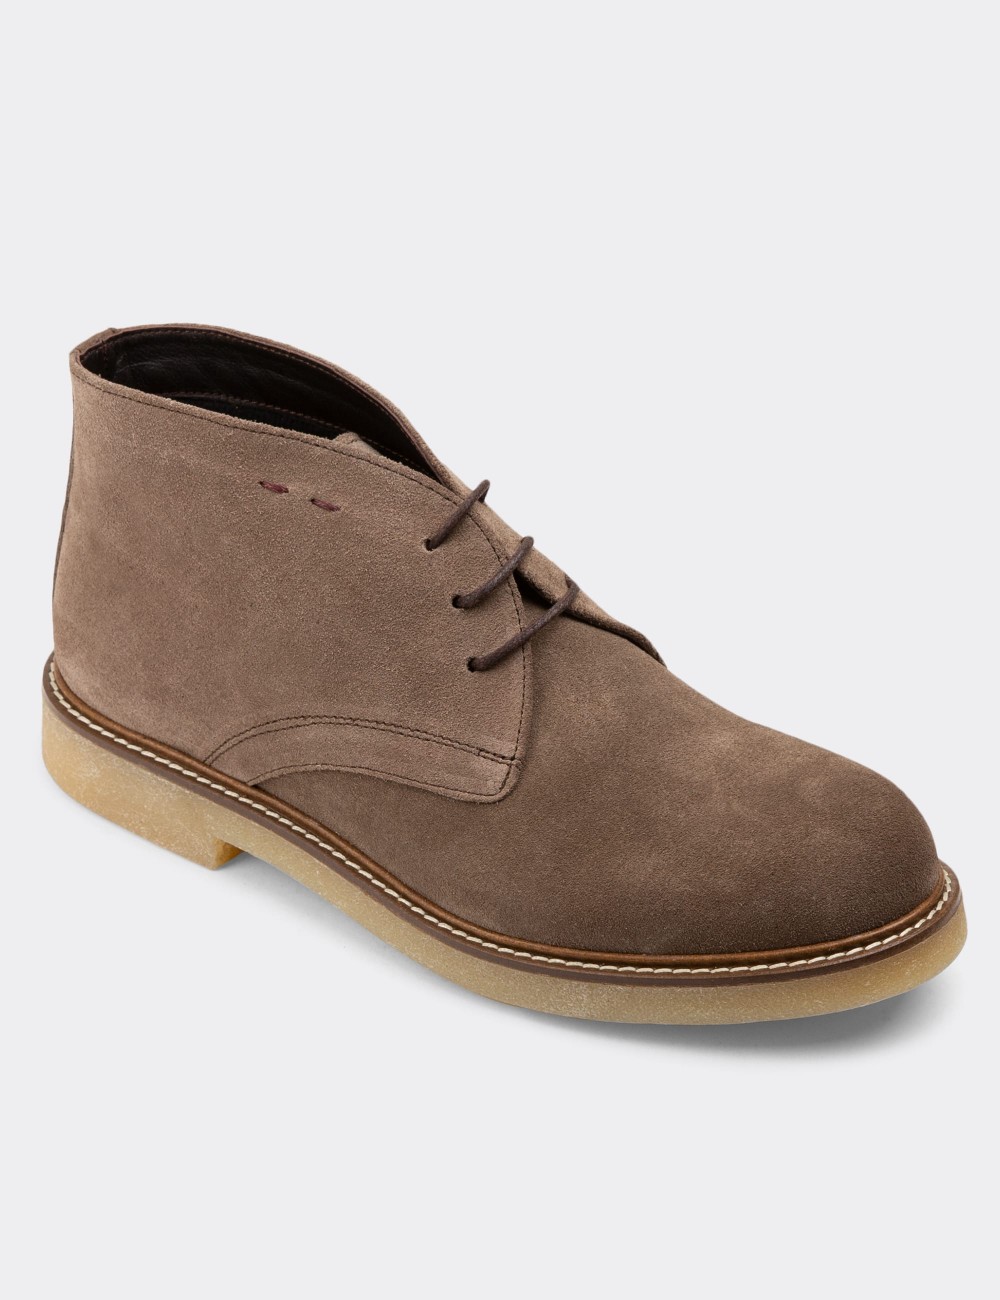 Sandstone Suede Leather Desert Boots - 01295MVZNC02